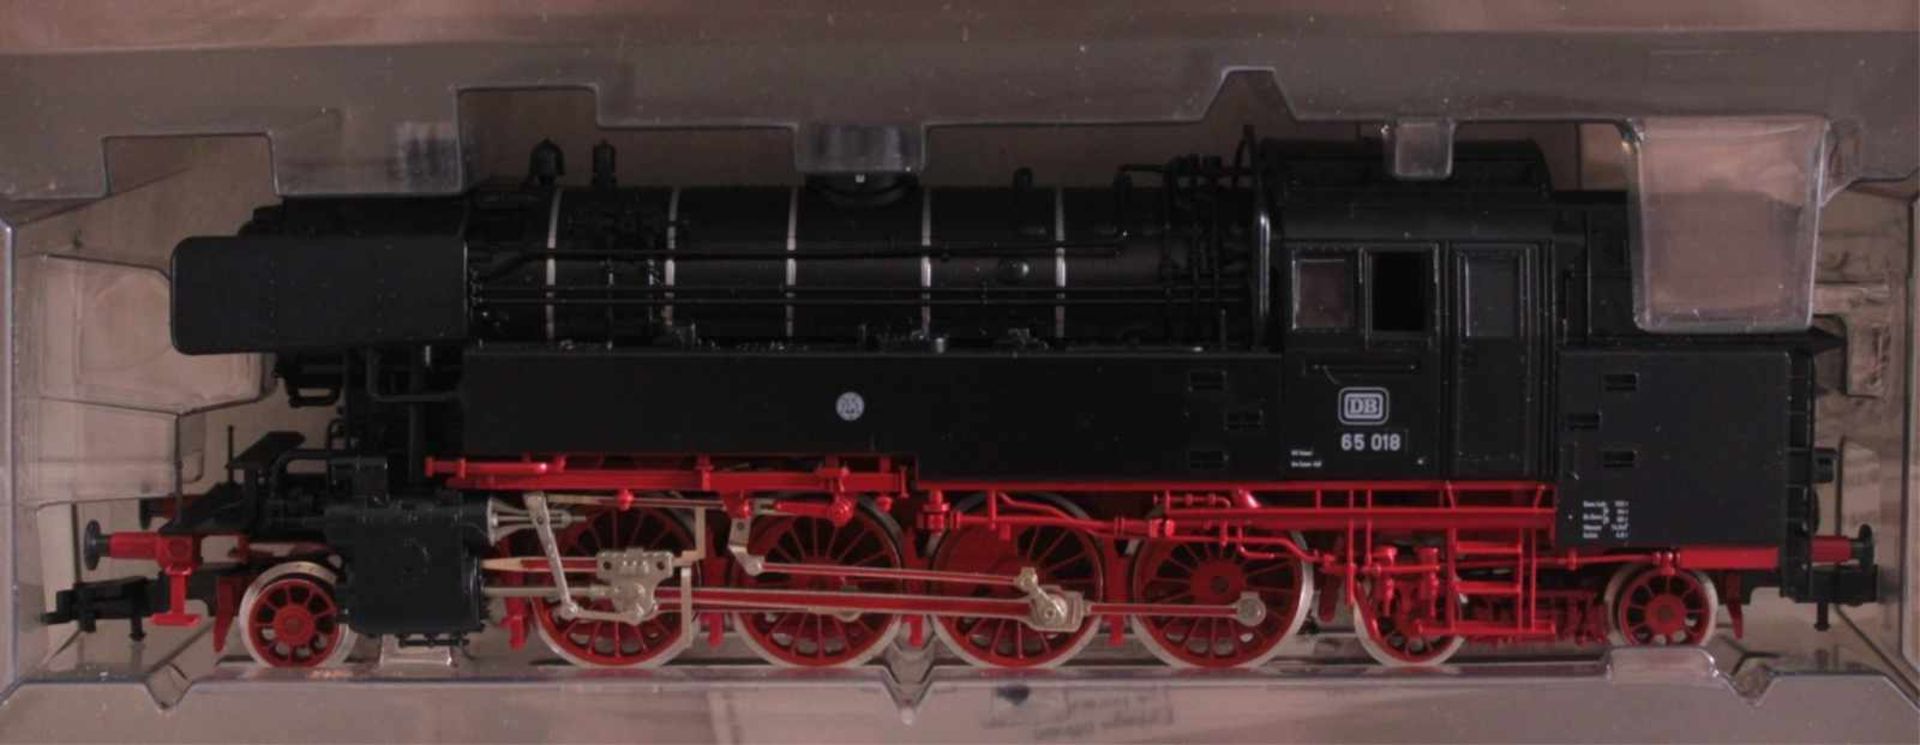 Fleischmann Dampflok 4065 Spur H0 mit 8 Waggons4 Kessel und 2 Güterwagen mit Werbeschrift, 2 - Image 2 of 2